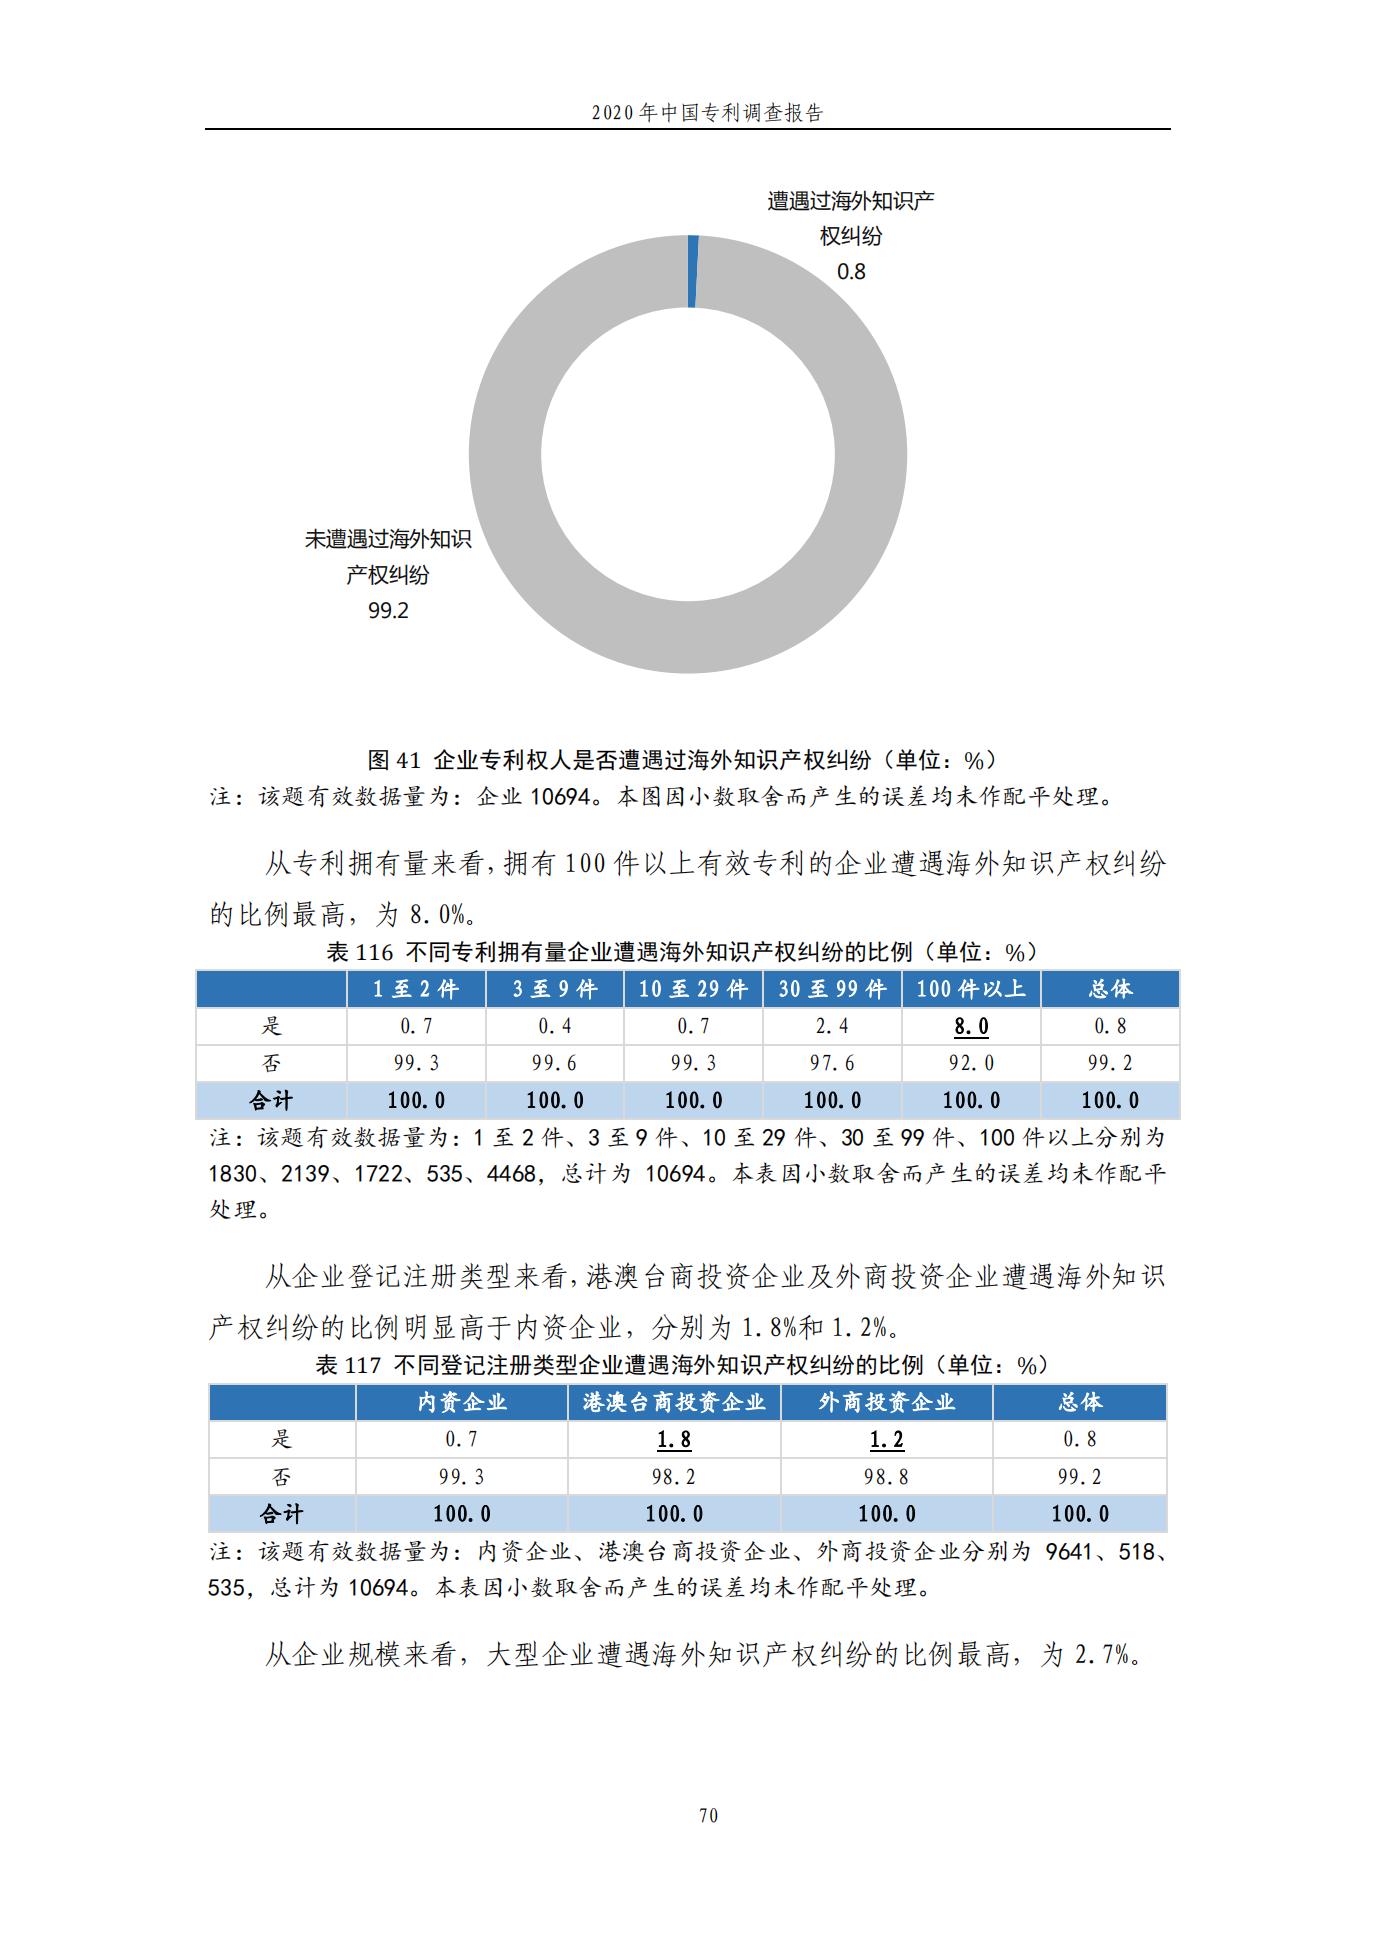 《2020年中国专利调查报告》全文发布